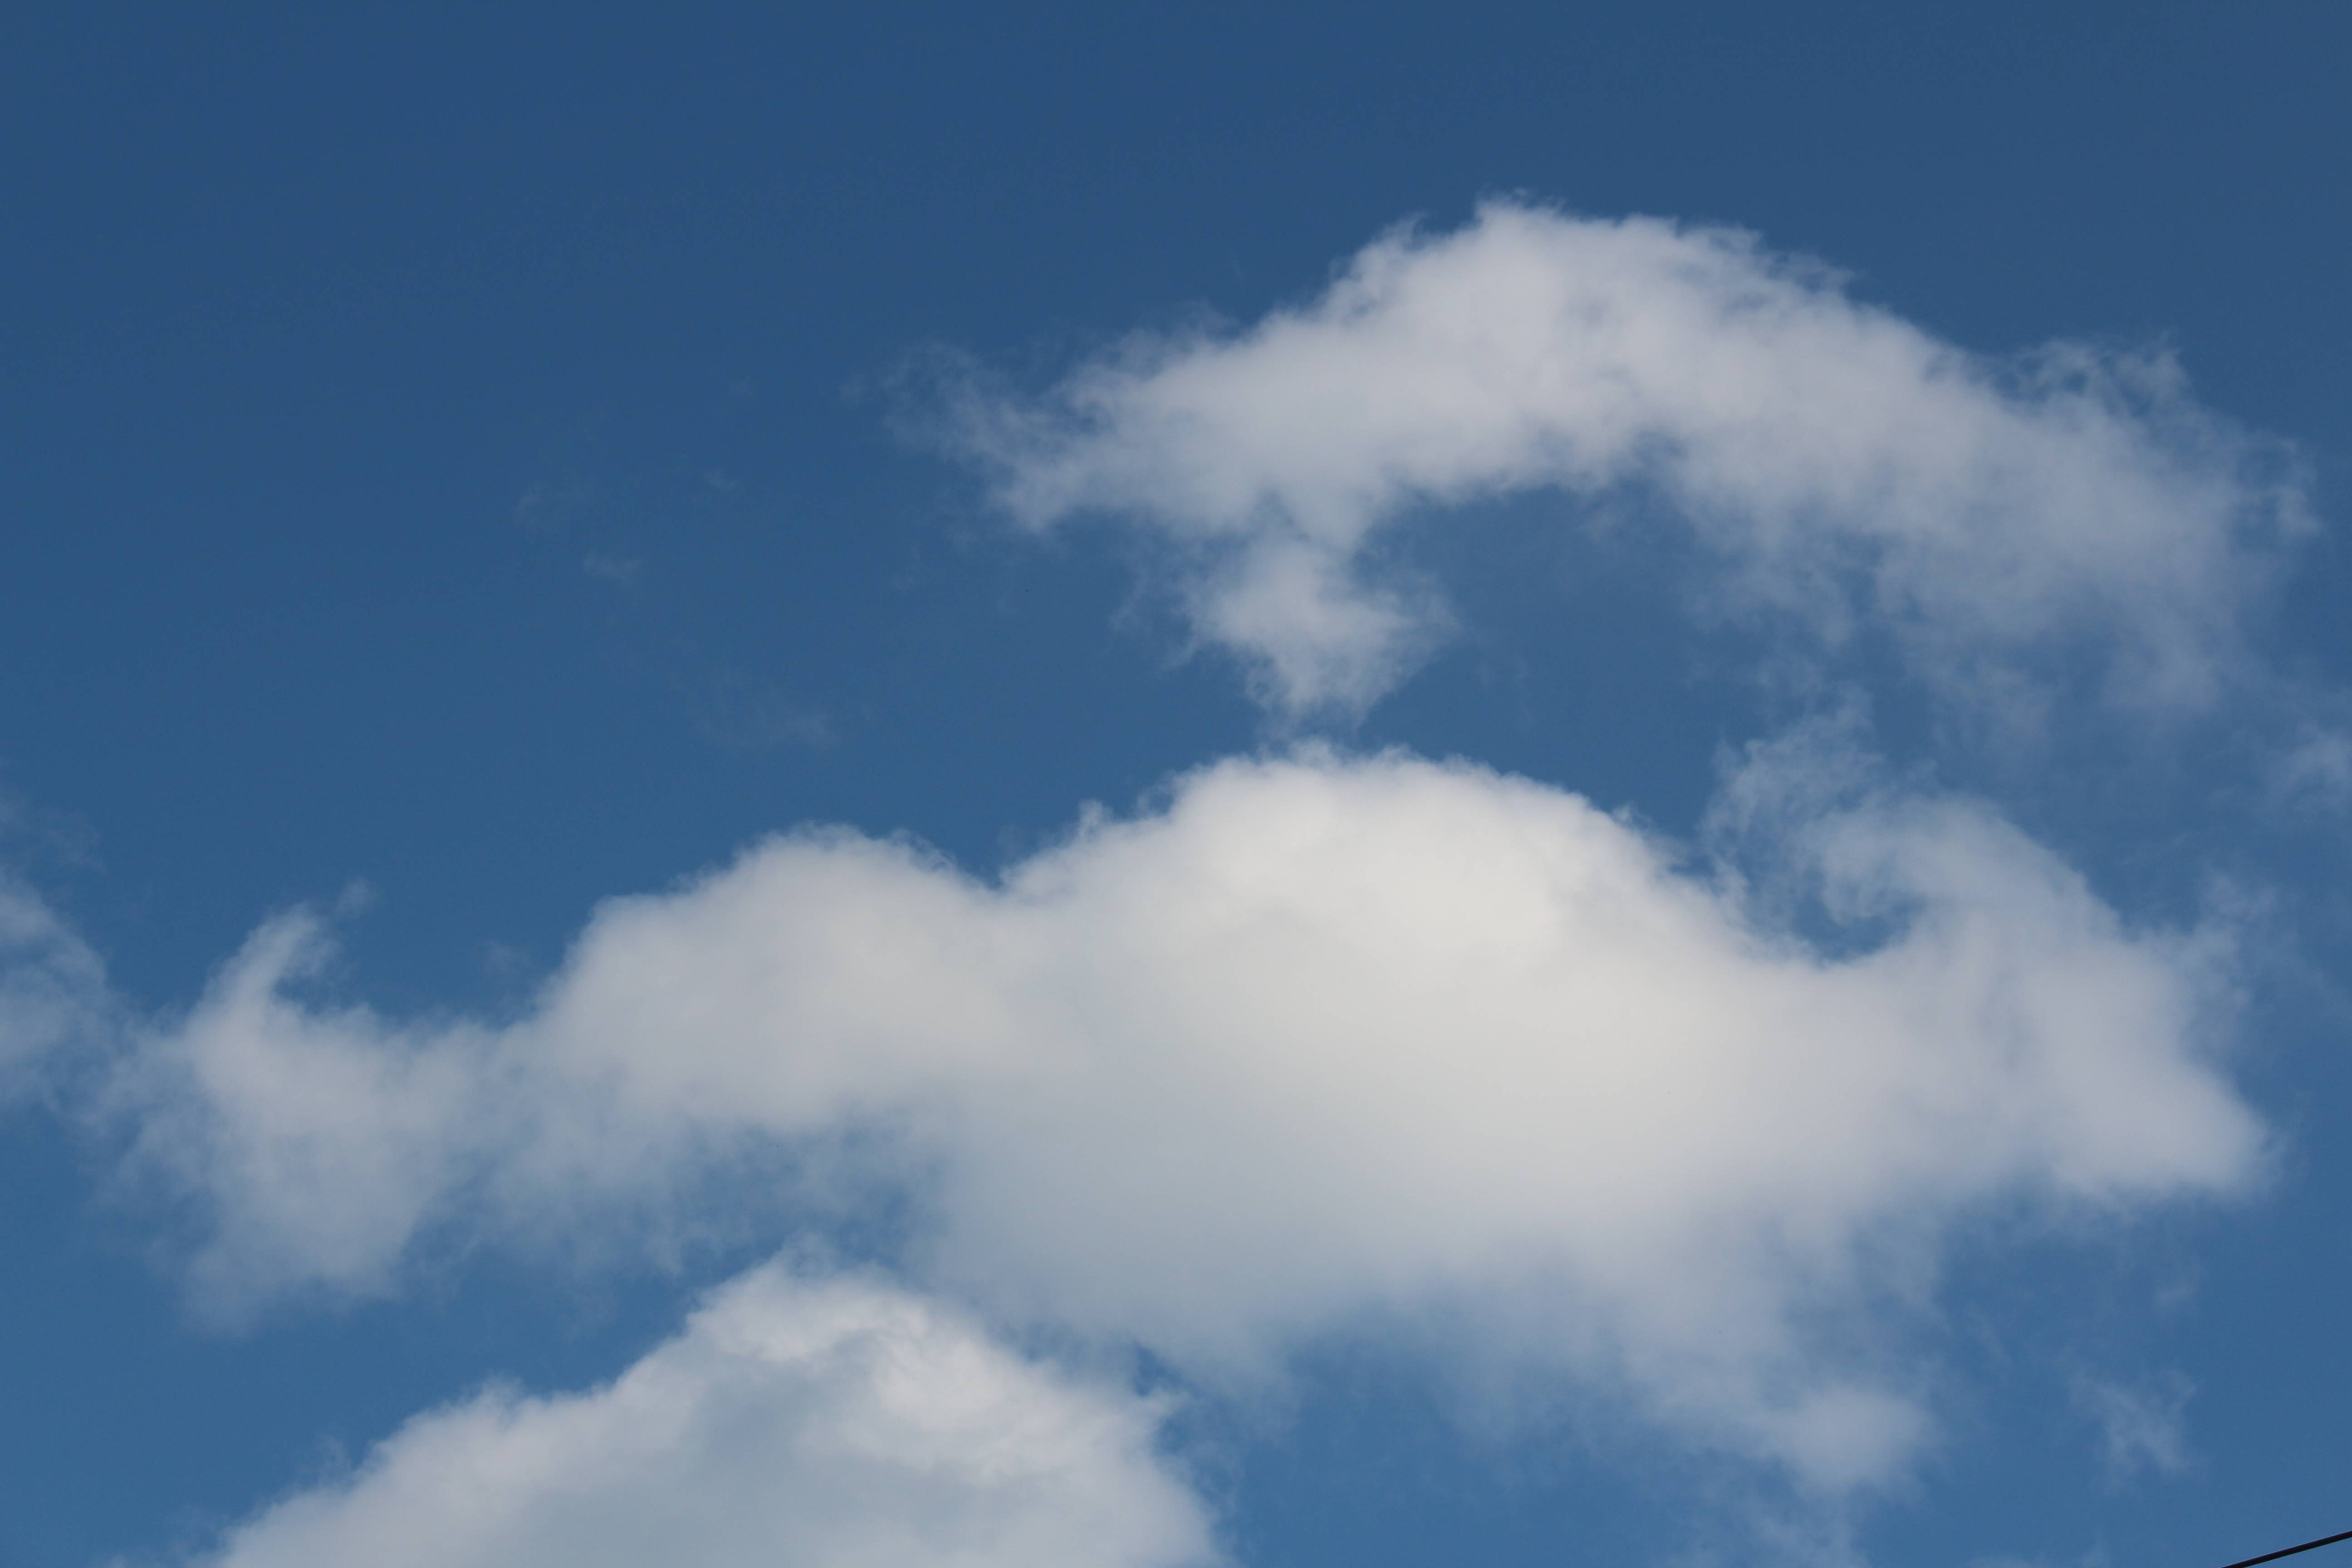 在翻看照片的时候,无意中发现了"一箭穿心"的云朵.